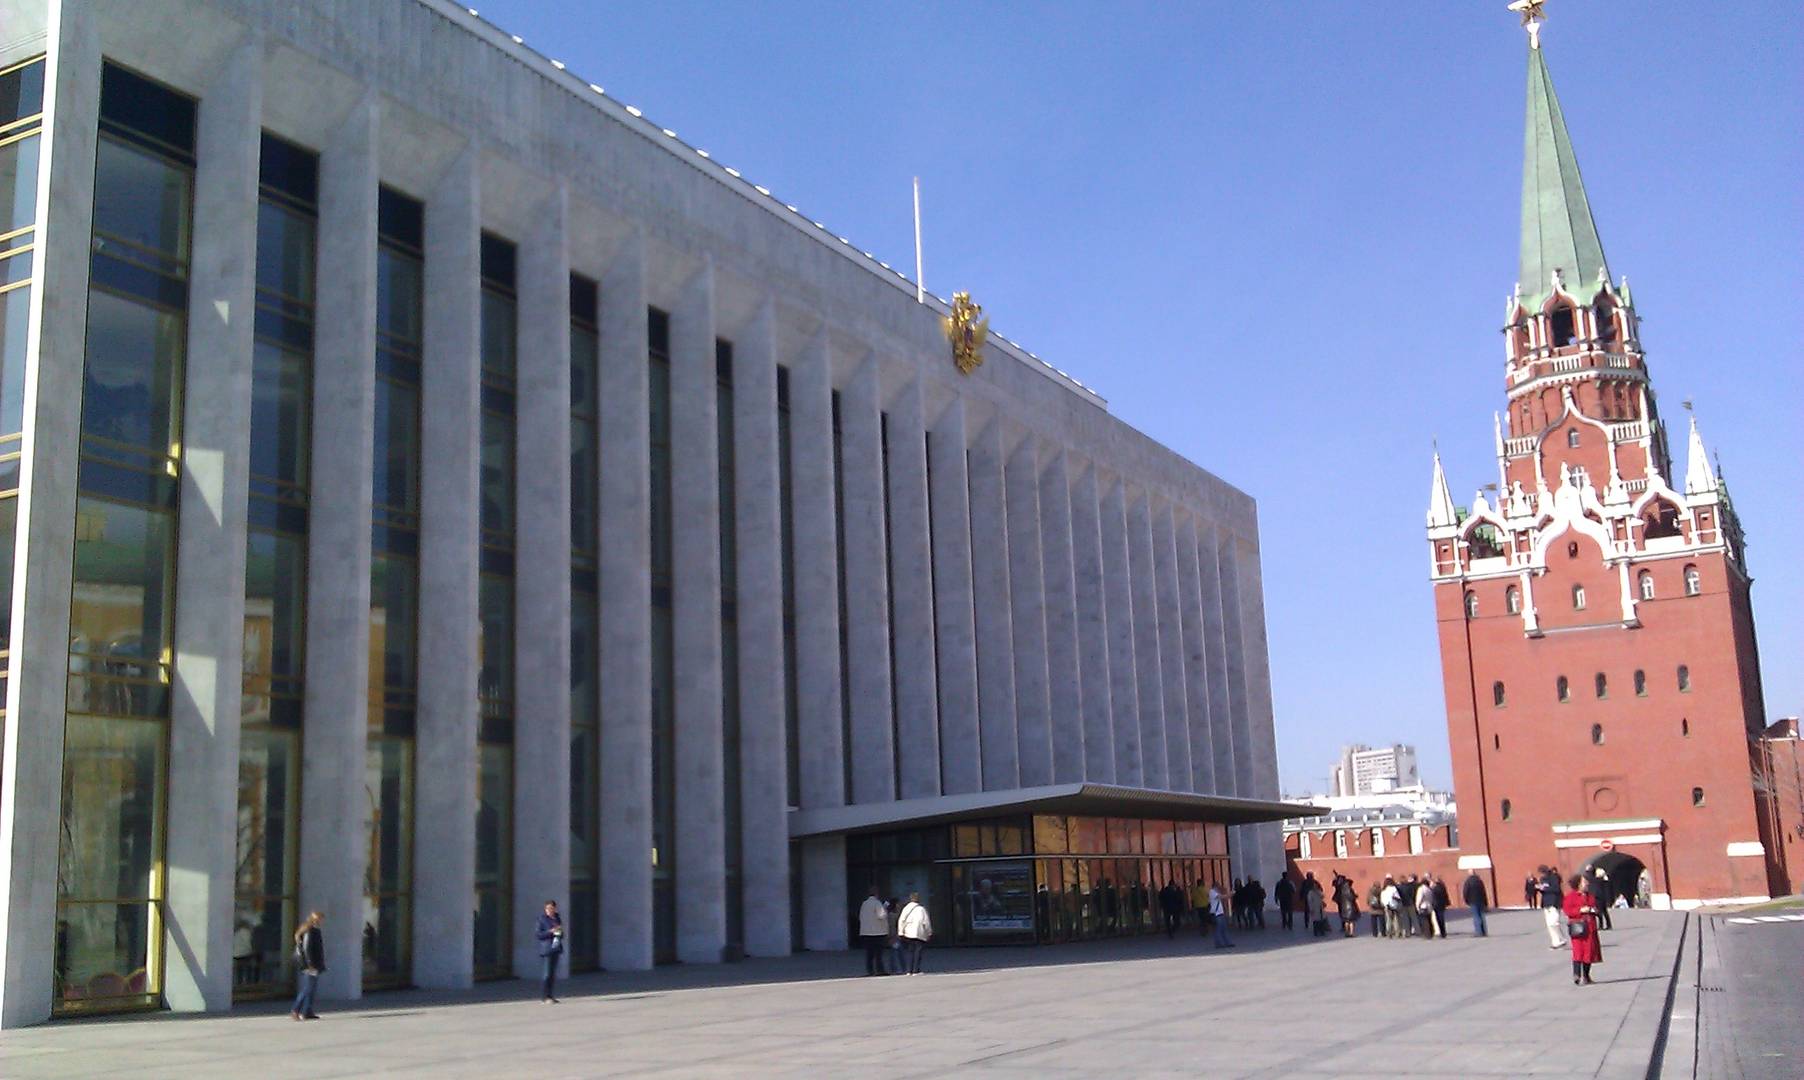 Фото кремлевского концертного зала в москве